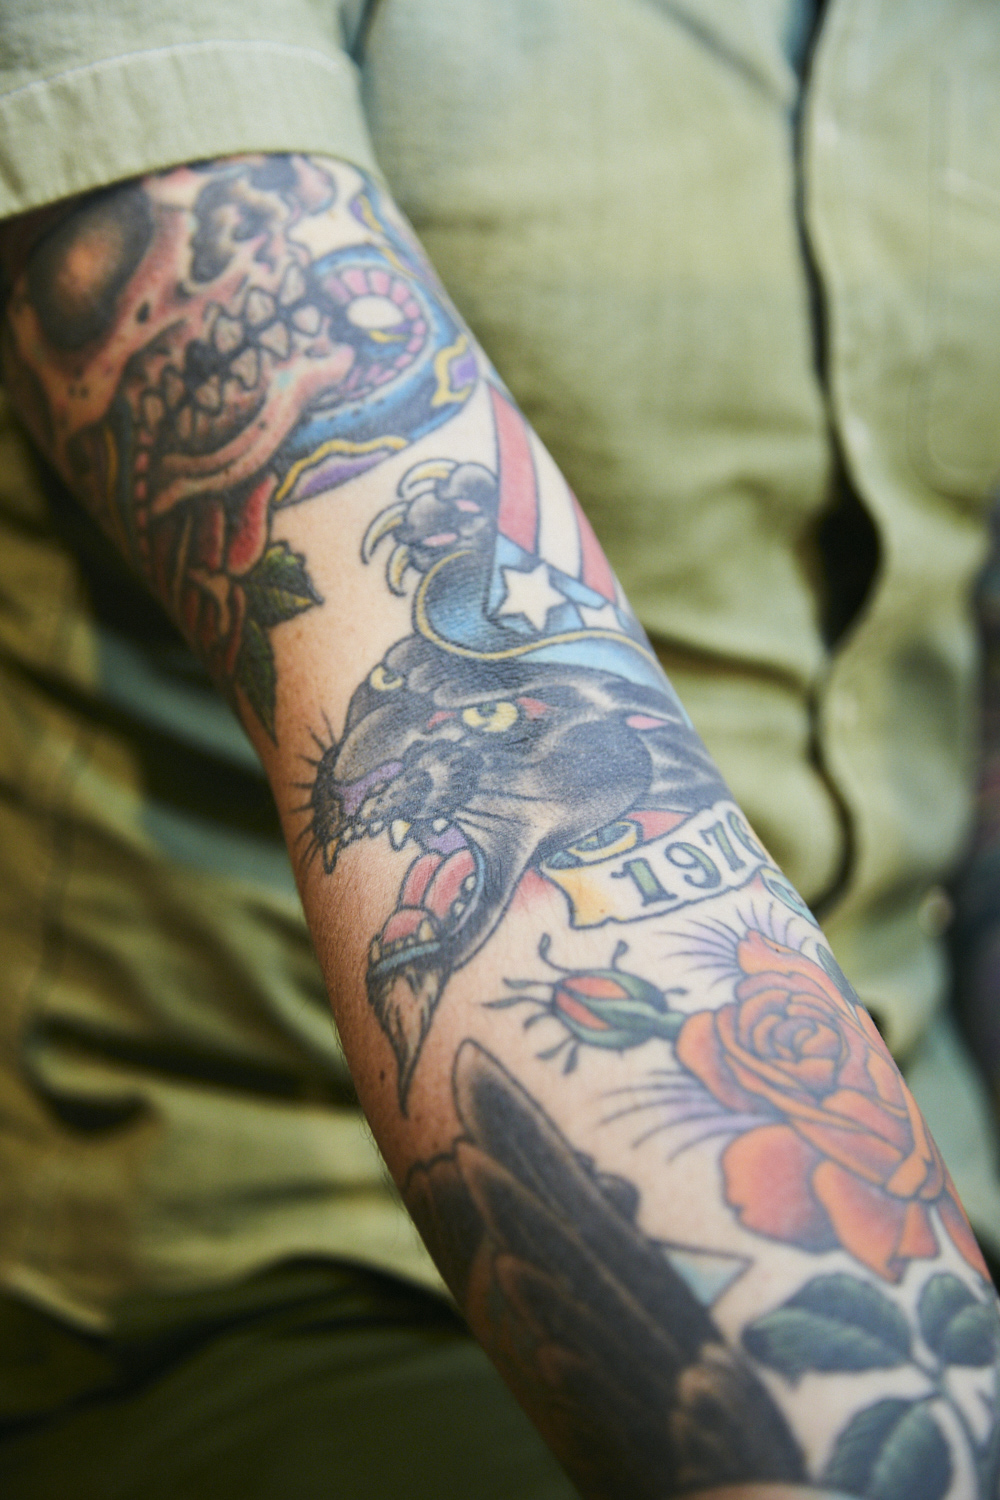 カルチャーに肌を預ける Dr Martens Tattooコレクション ドクターマーチン18年秋冬の Tattoo コレクション 発表にあたって デザインを手掛けた３人のタトゥー アーティスト達が集合 ドクターマーチンとタトゥー の幸福な出会いについて それぞれの思いを聞いた